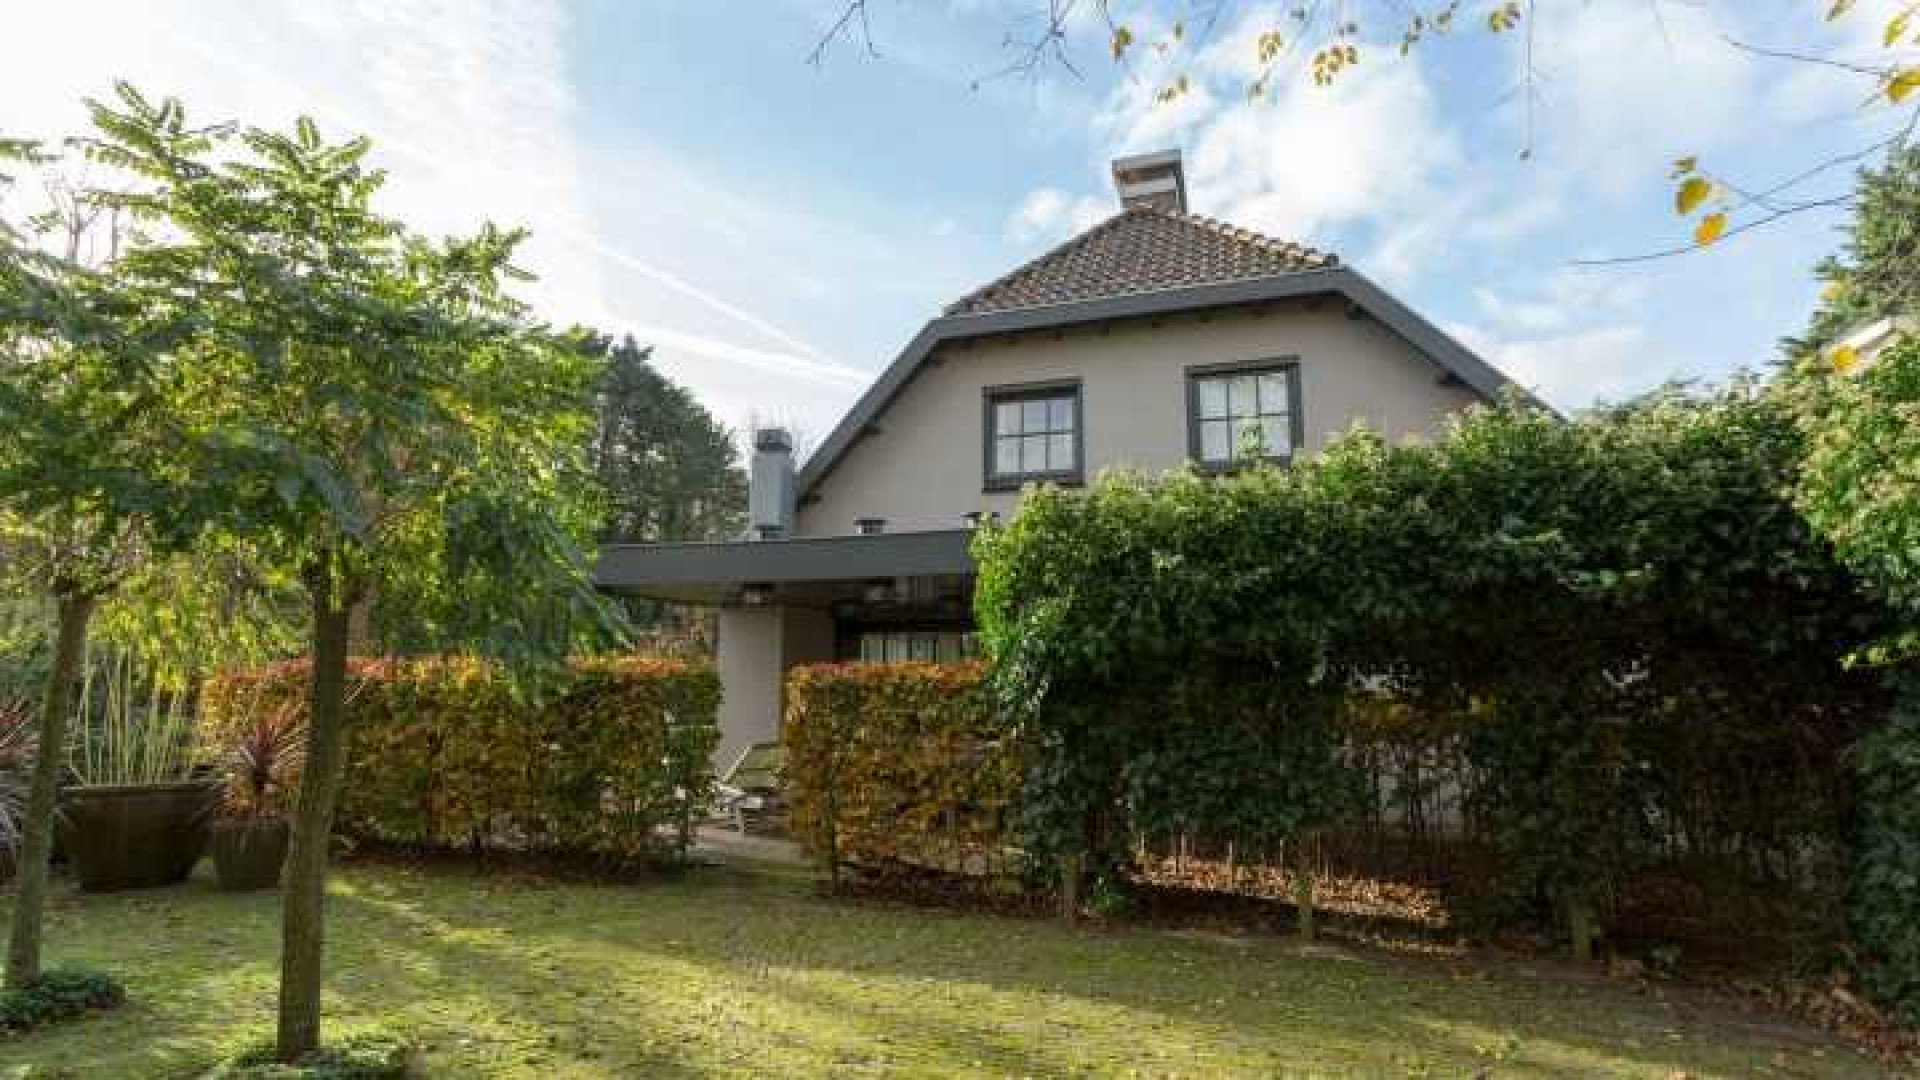 Henny Huisman verkoopt zijn villa zwaar onder de vraagprijs. Zie foto's 38